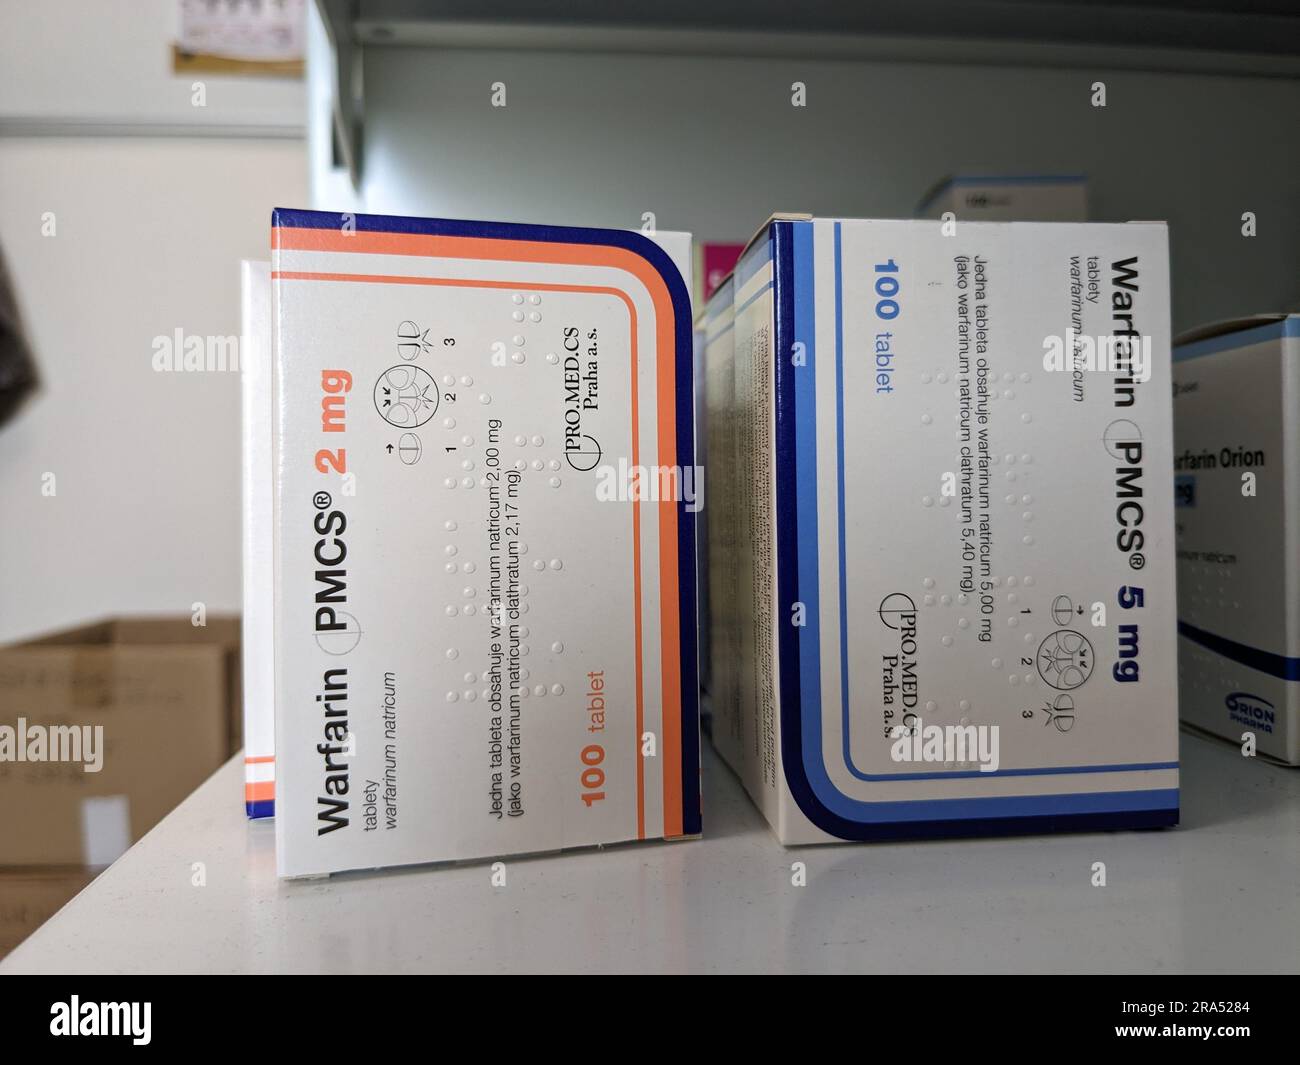 Farmacia negozio-pacchetto di compresse di warfarin, usato per fluidificare il sangue nei pazienti che sono a rischio di coaguli di sangue che possono causare ictus e malattie cardiache. Foto Stock